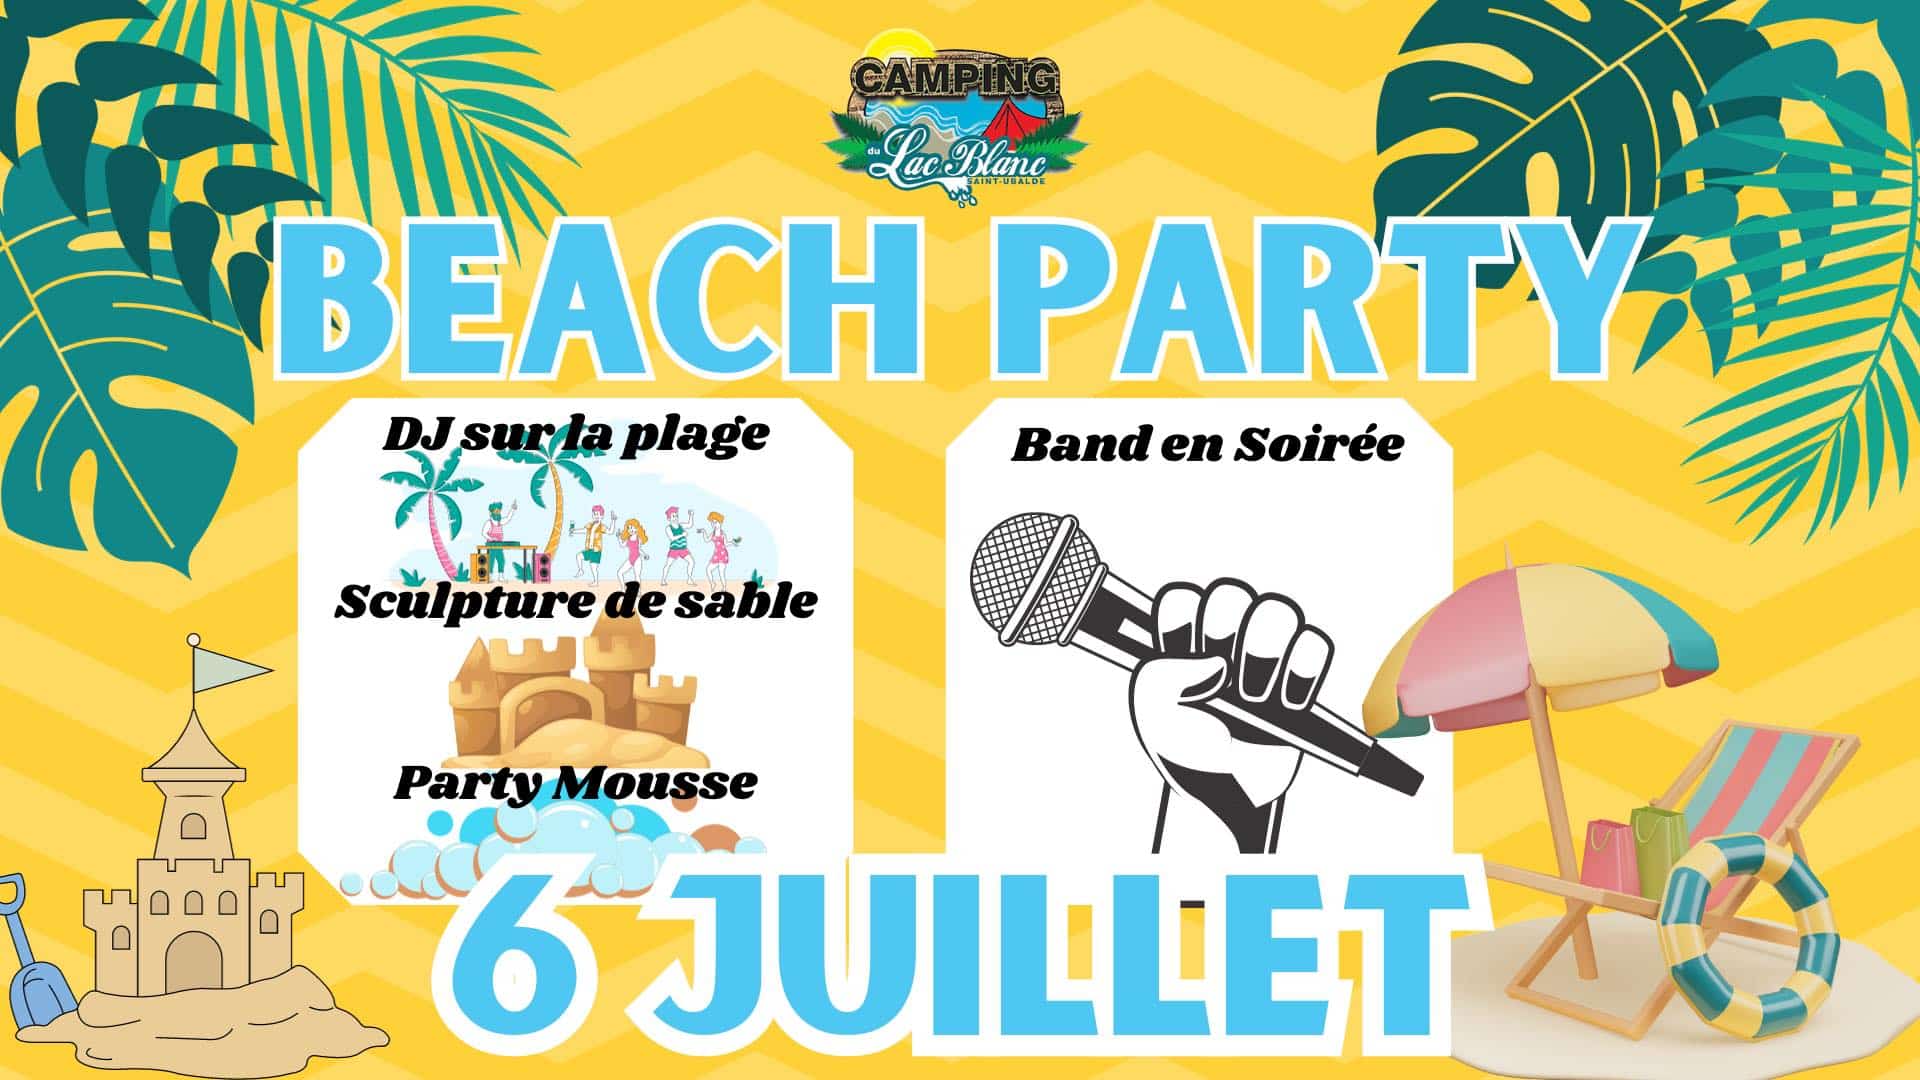 Beach Party, Dj sur le plage, sculpture de sable, Party Mousse & Band en soirée, le 6 juillet 2024 au camping du lac blanc